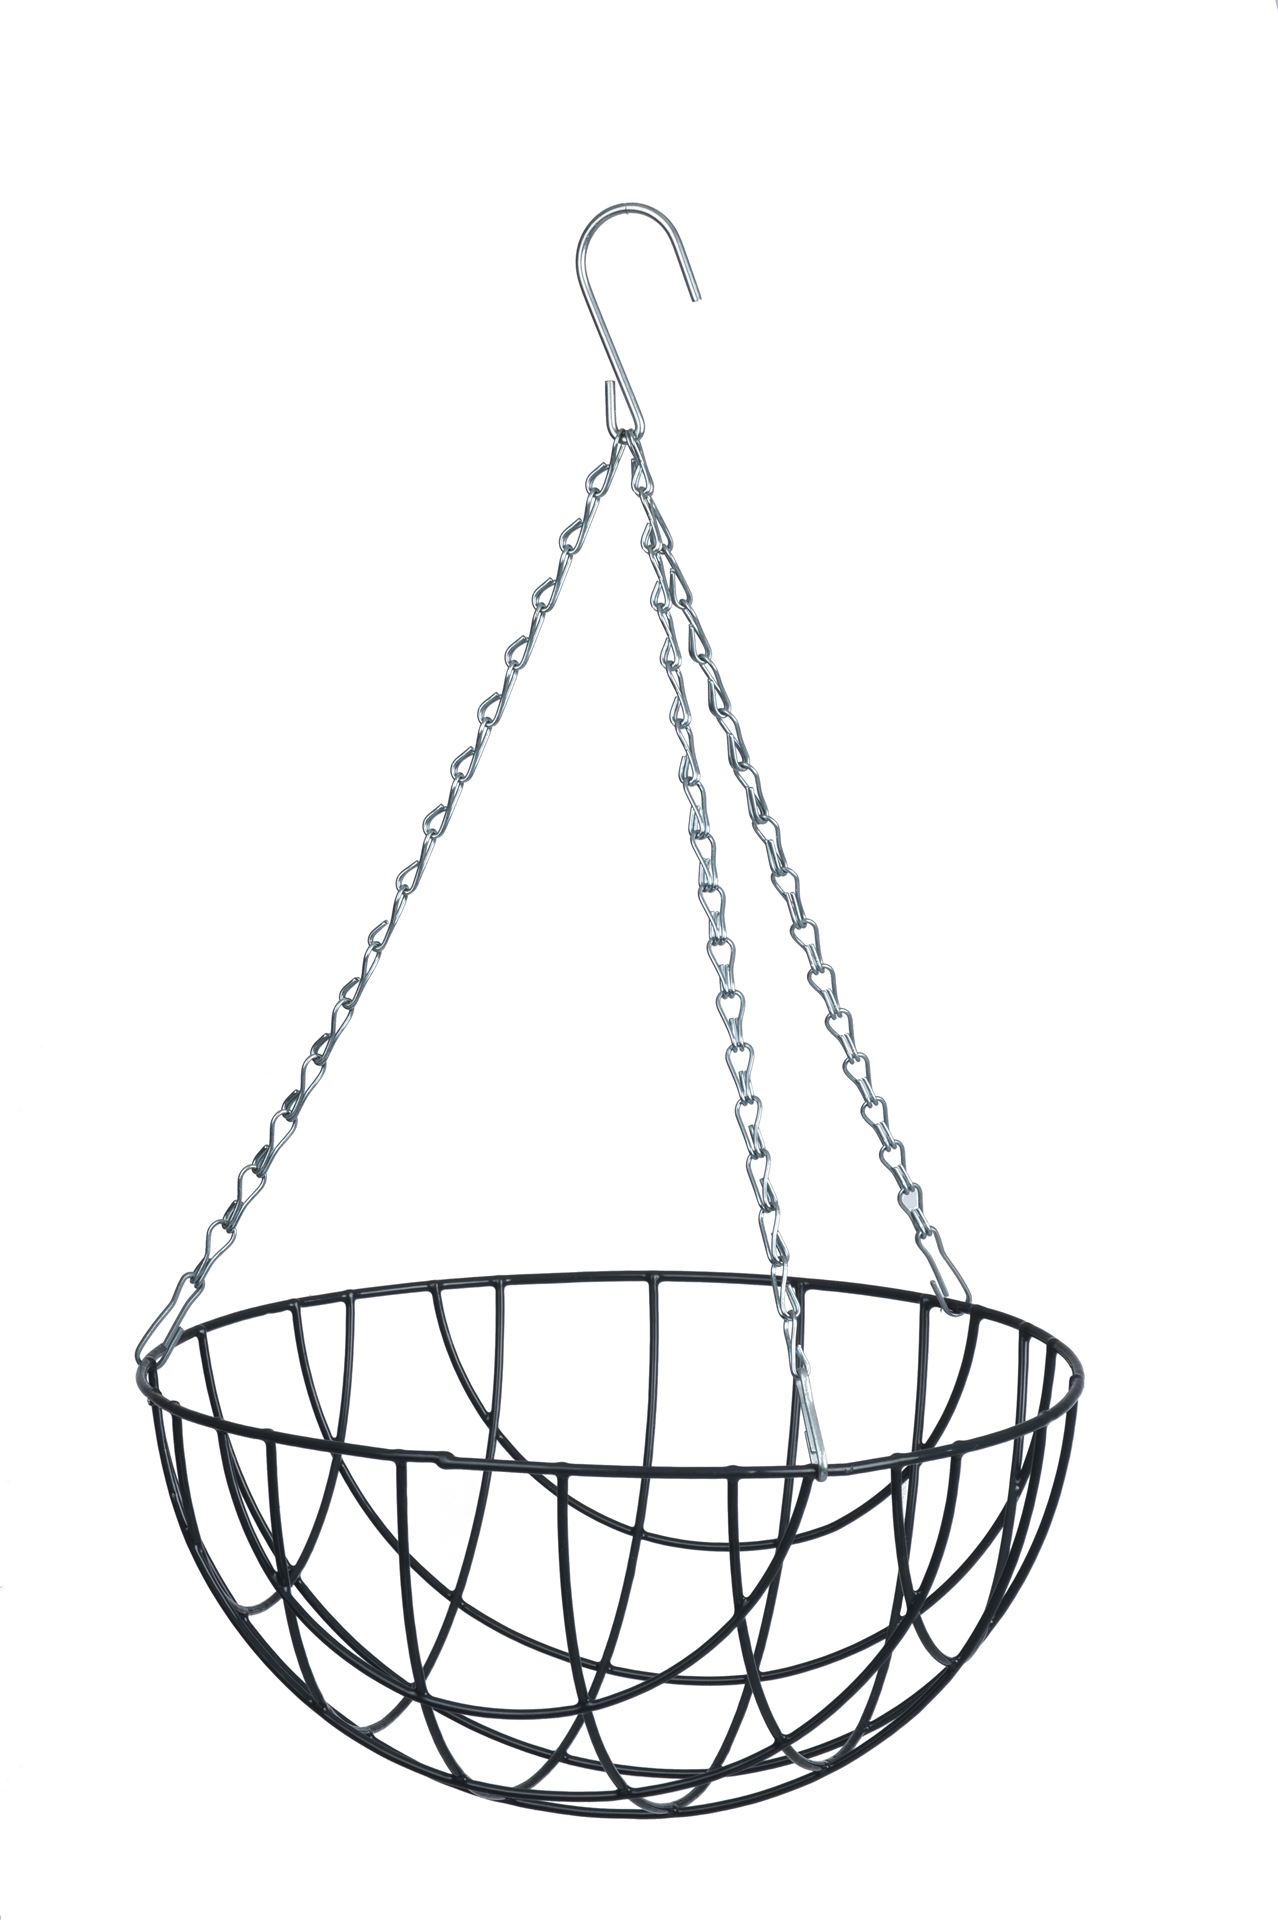 Hanging-basket-metaaldraad-grijs-geepoxeerd-incl-ketting-H16x-30cm